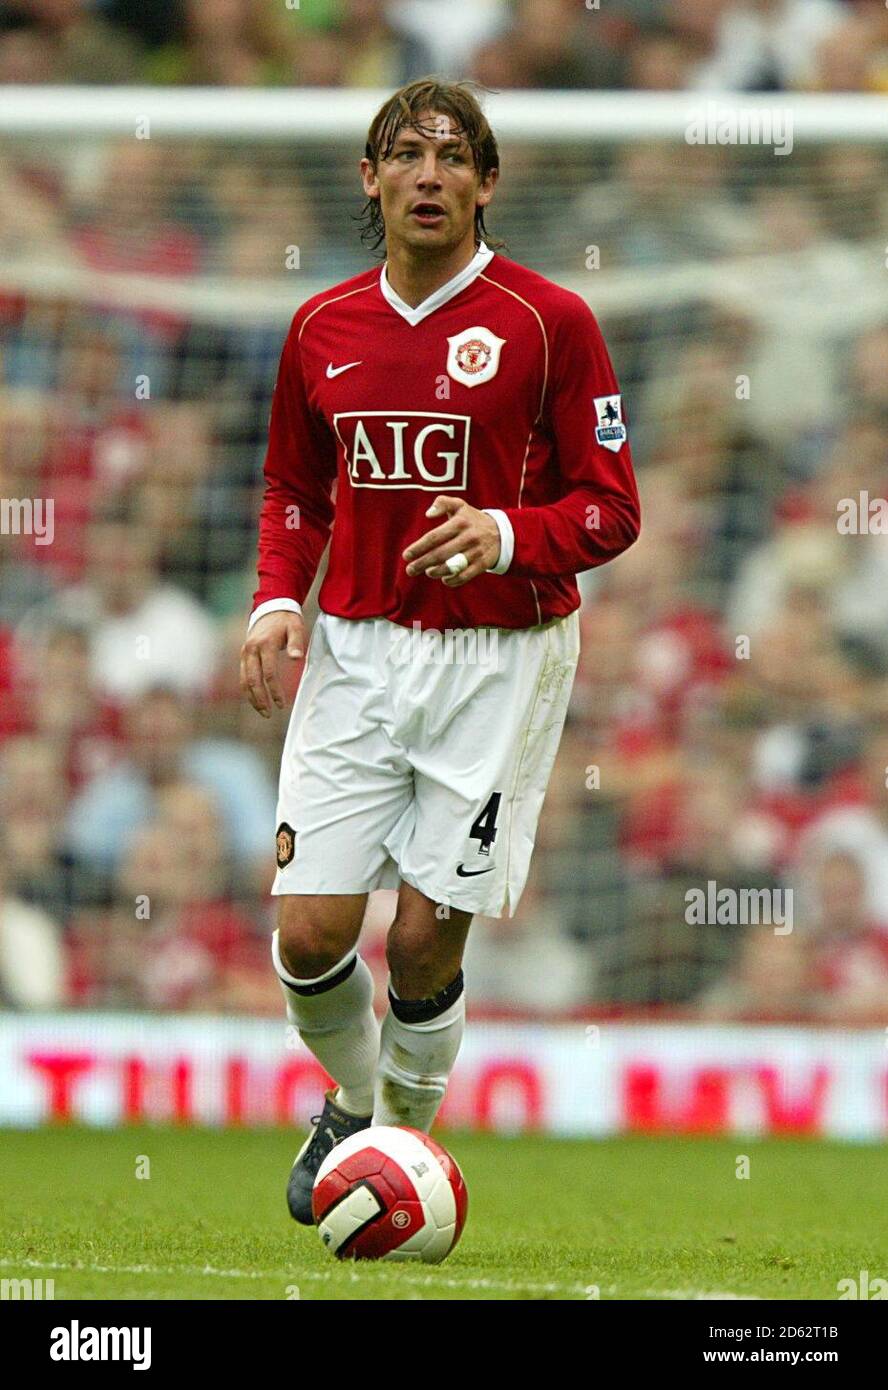 Gabriel Heinze, Manchester United Stock Photo